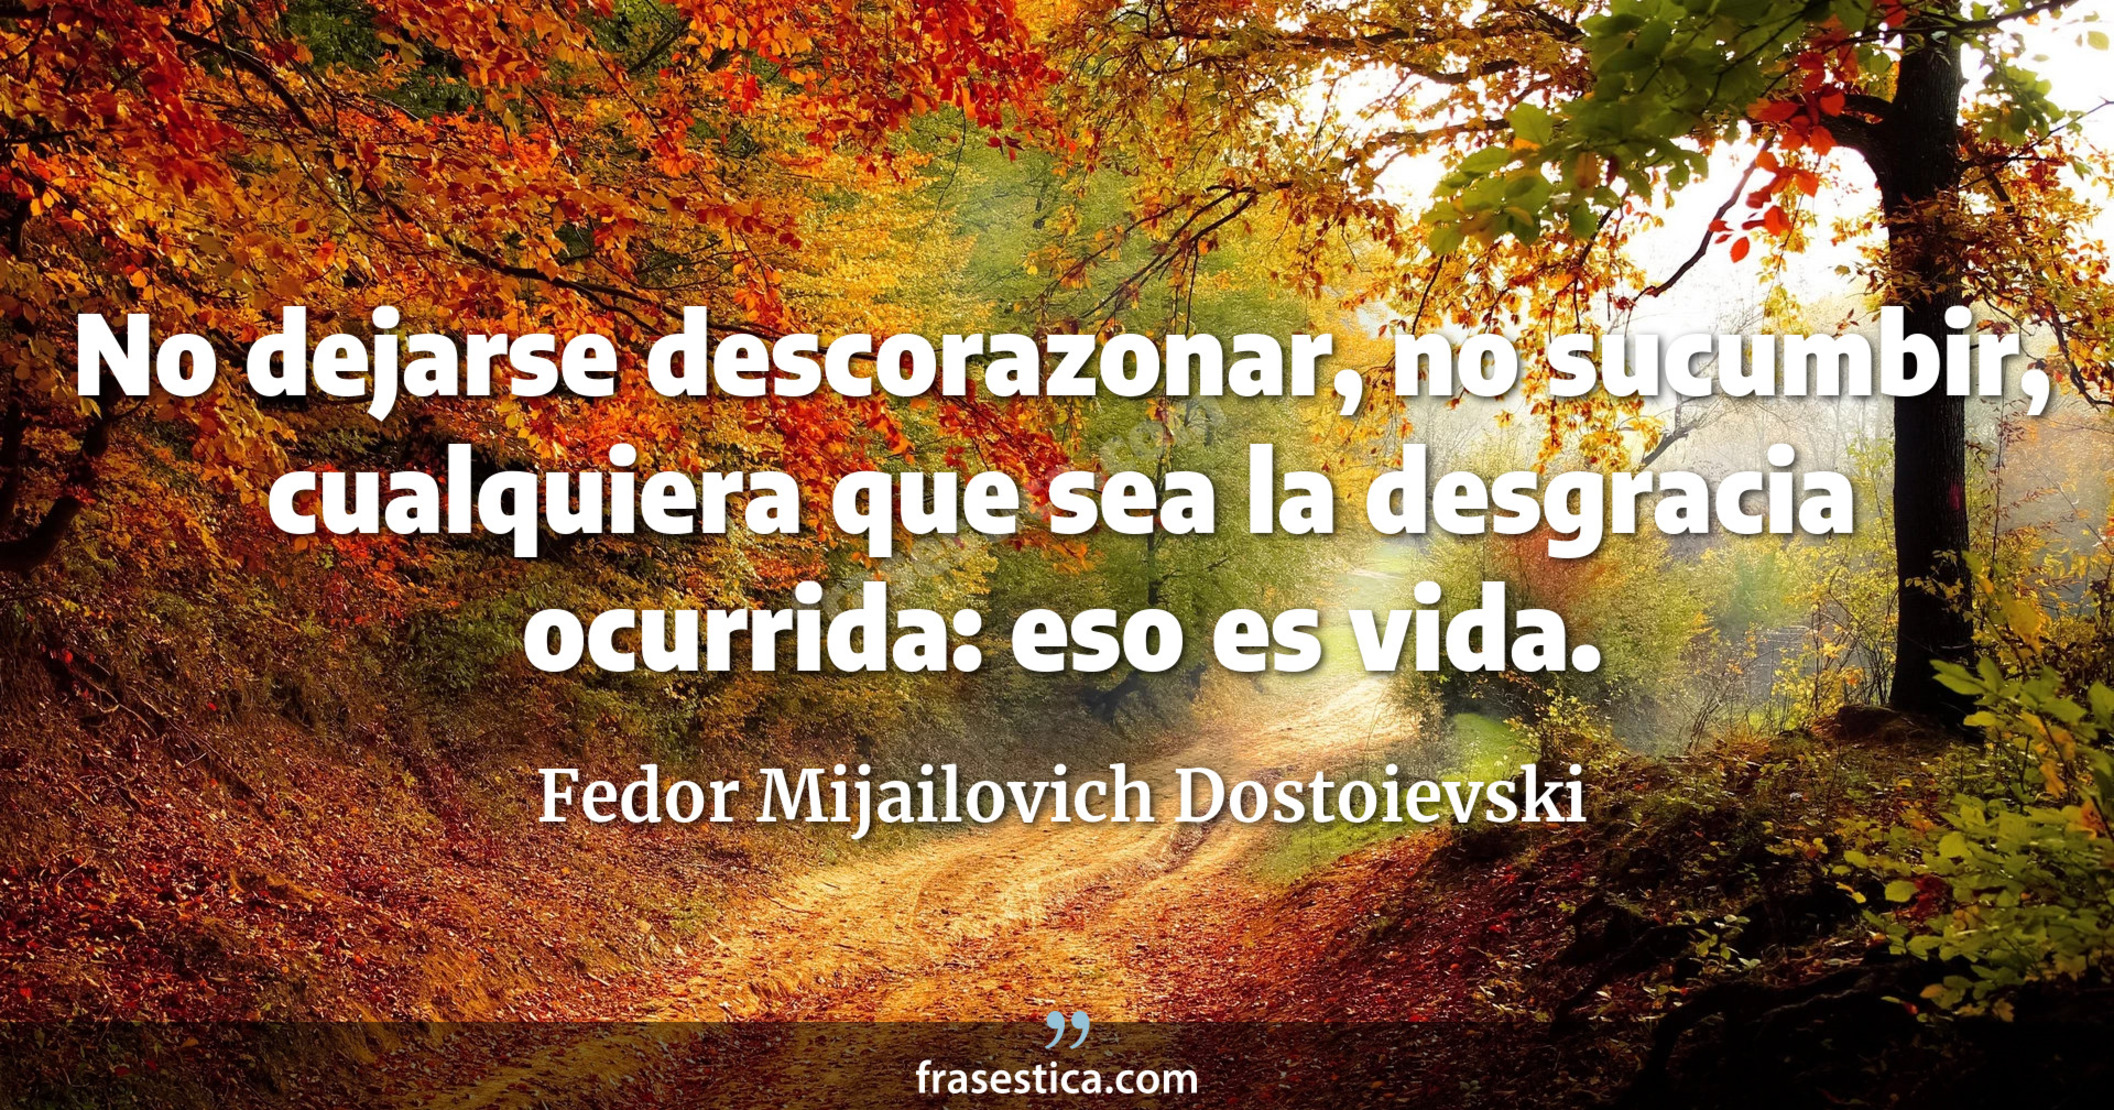 No dejarse descorazonar, no sucumbir, cualquiera que sea la desgracia ocurrida: eso es vida. - Fedor Mijailovich Dostoievski